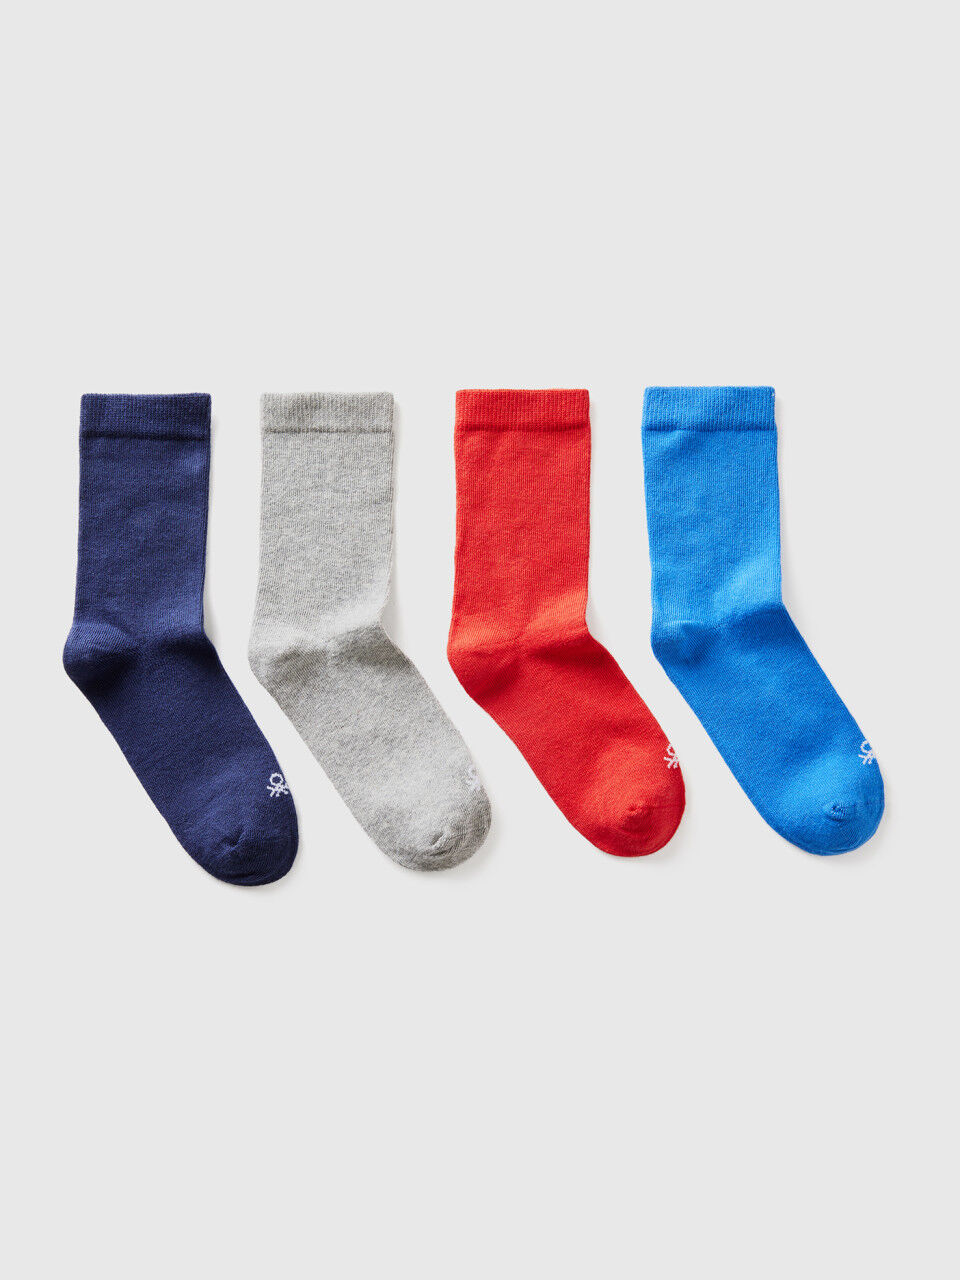 Cuatro pares de calcetines de algodón orgánico elástico